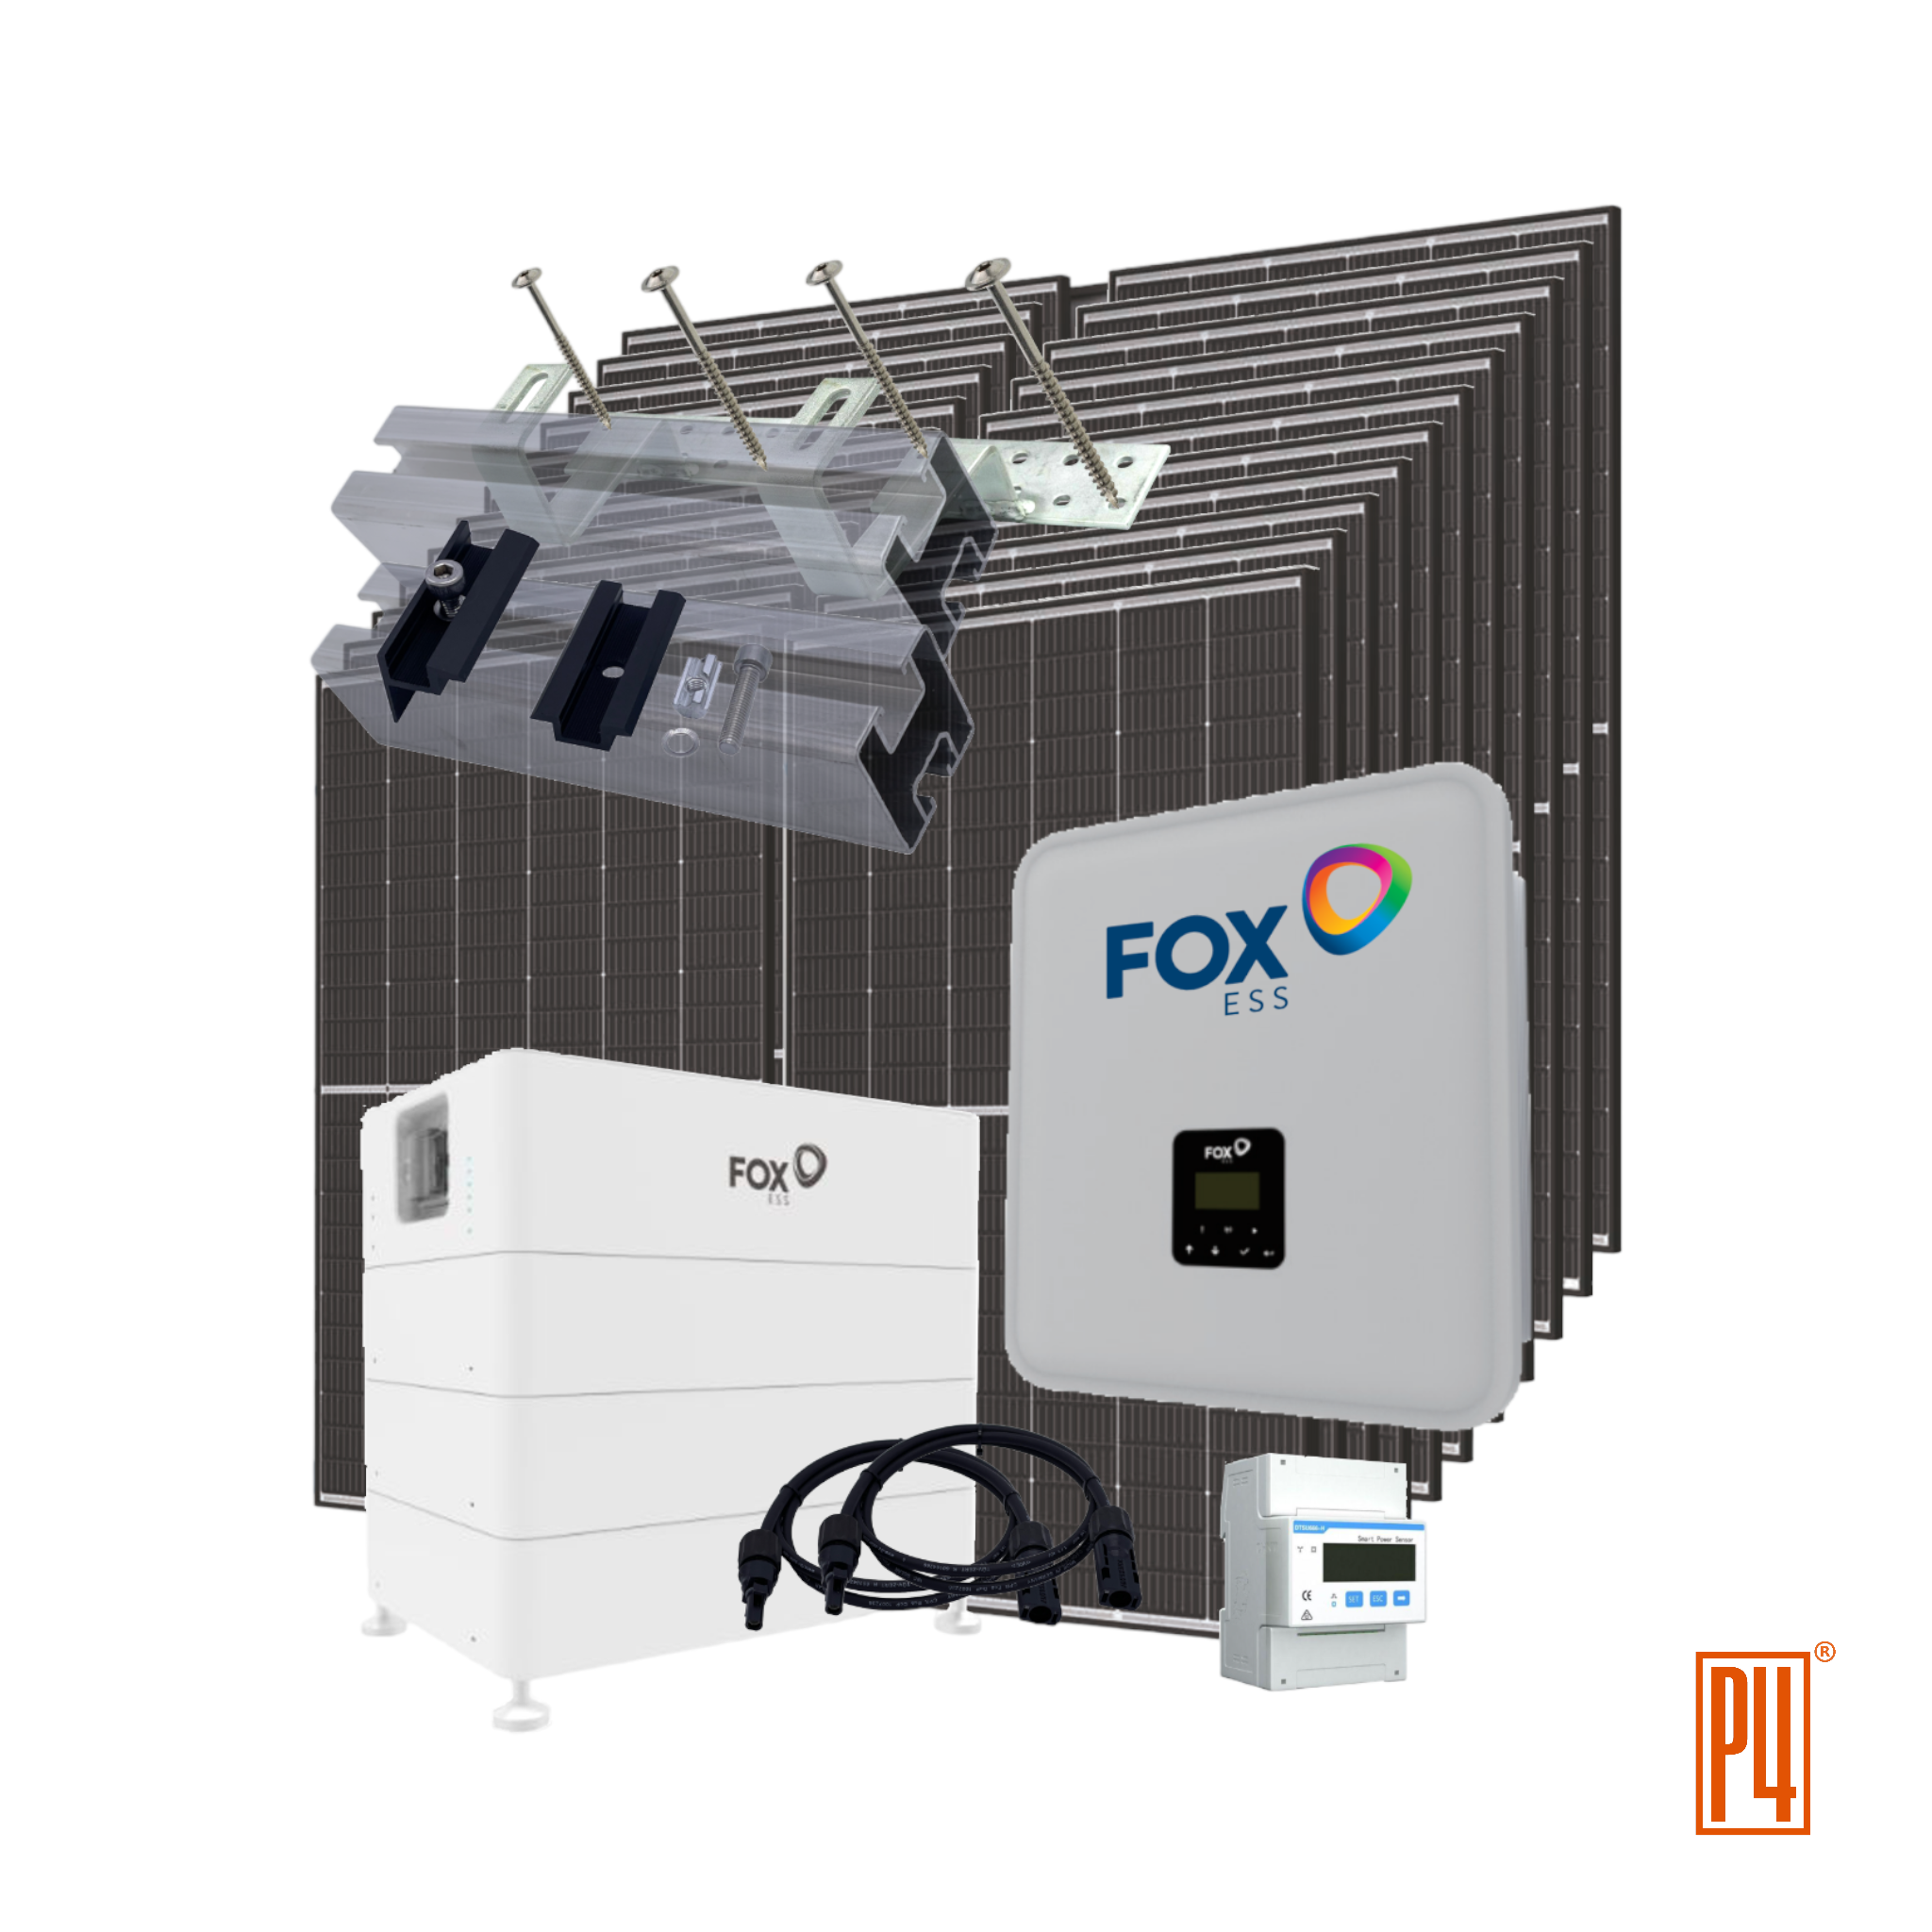 P4 Komplettpaket 10,32 kWp SoP4 Komplettset 10,32 kWp/ 11,52 kWh Batteriespeicher Trina Vertex S+ Bifacial, FOX ESS H3-8.0-E laranlage inkl. Unterkonstruktion für Ziegeldach kaufen